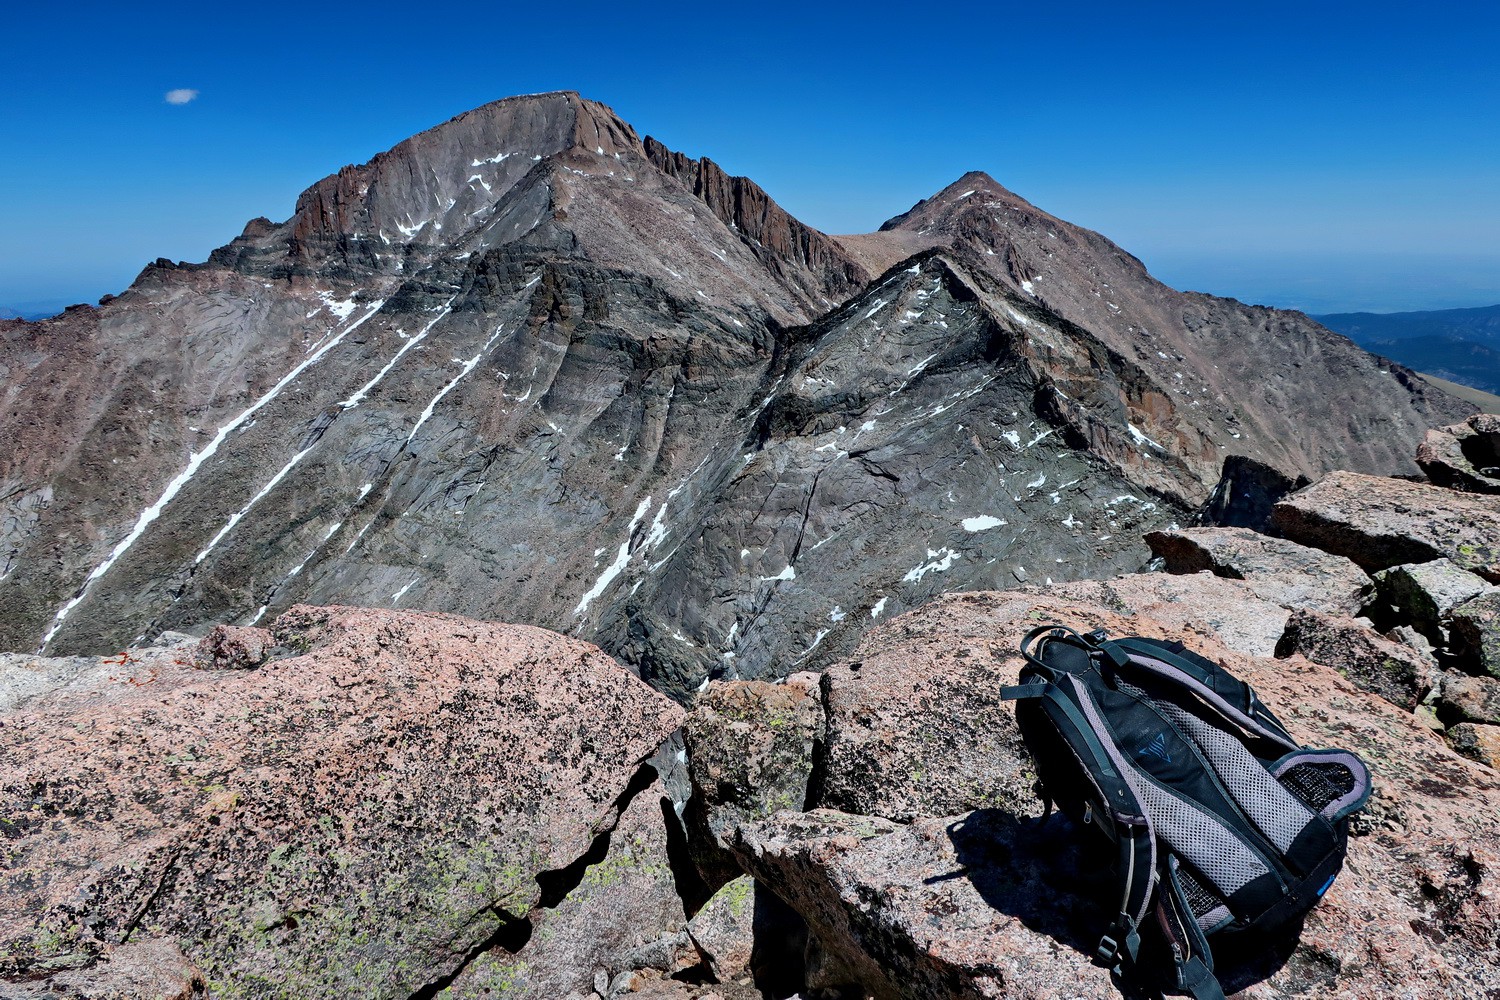 Longs Peak and Mount Meeker seen from the summit of Chief's Head Peak (4133 meters sea-level)